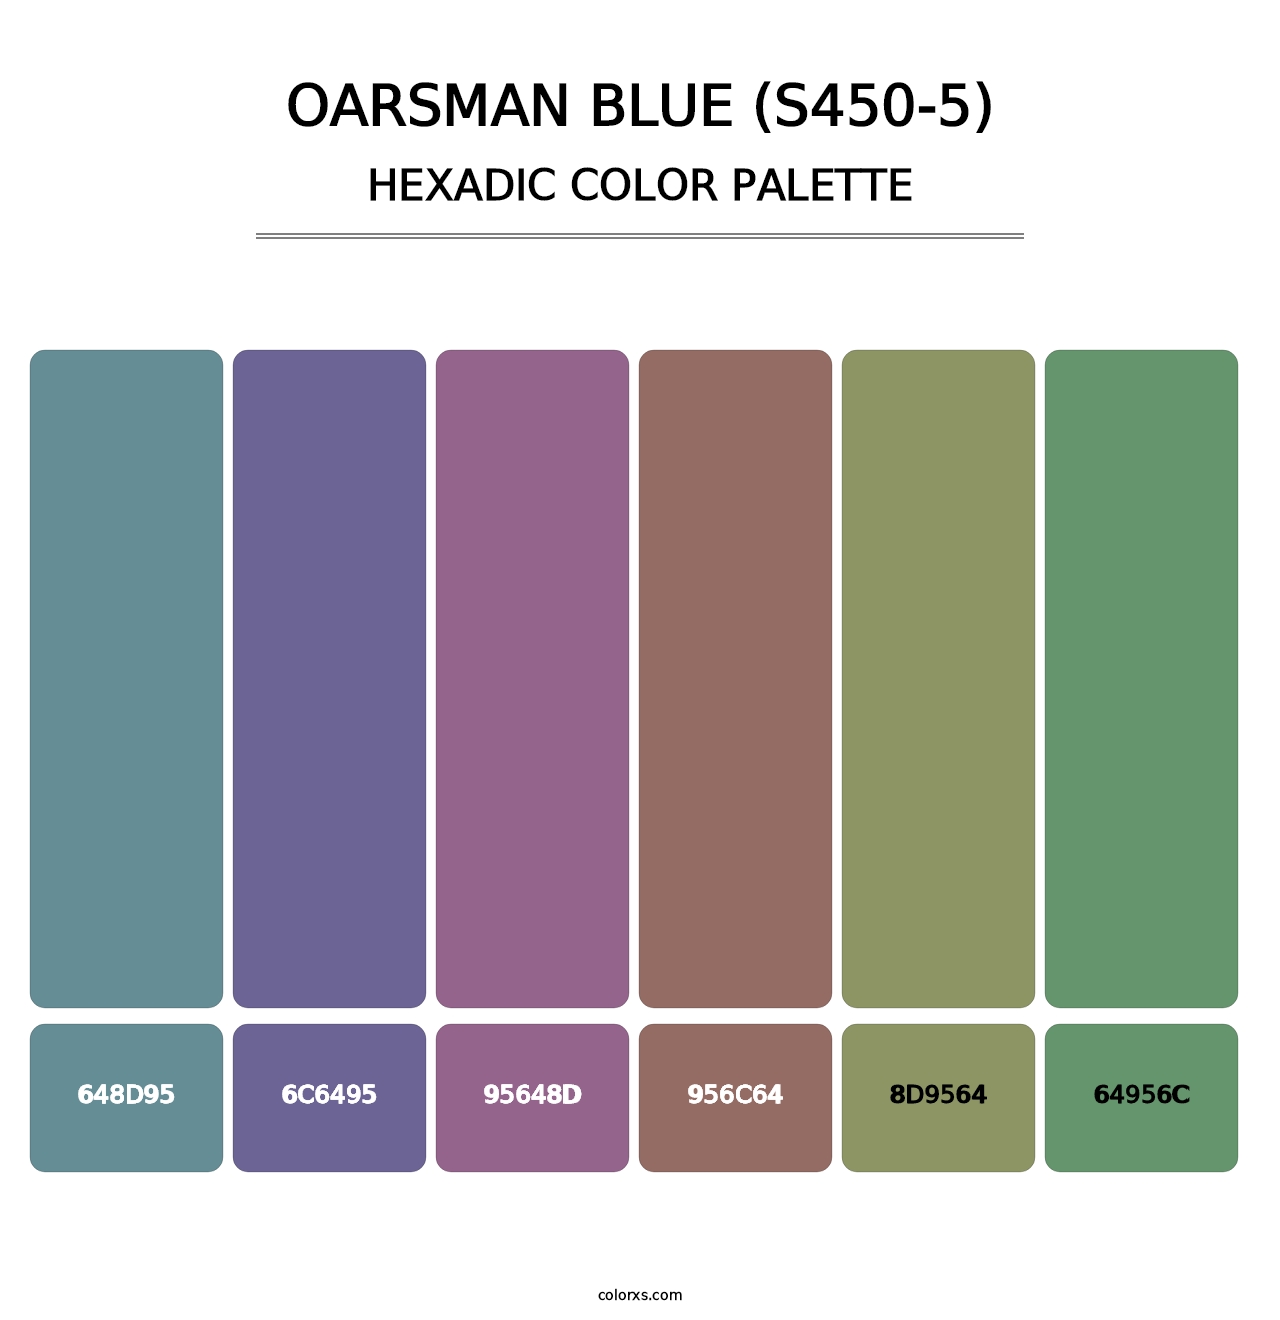 Oarsman Blue (S450-5) - Hexadic Color Palette